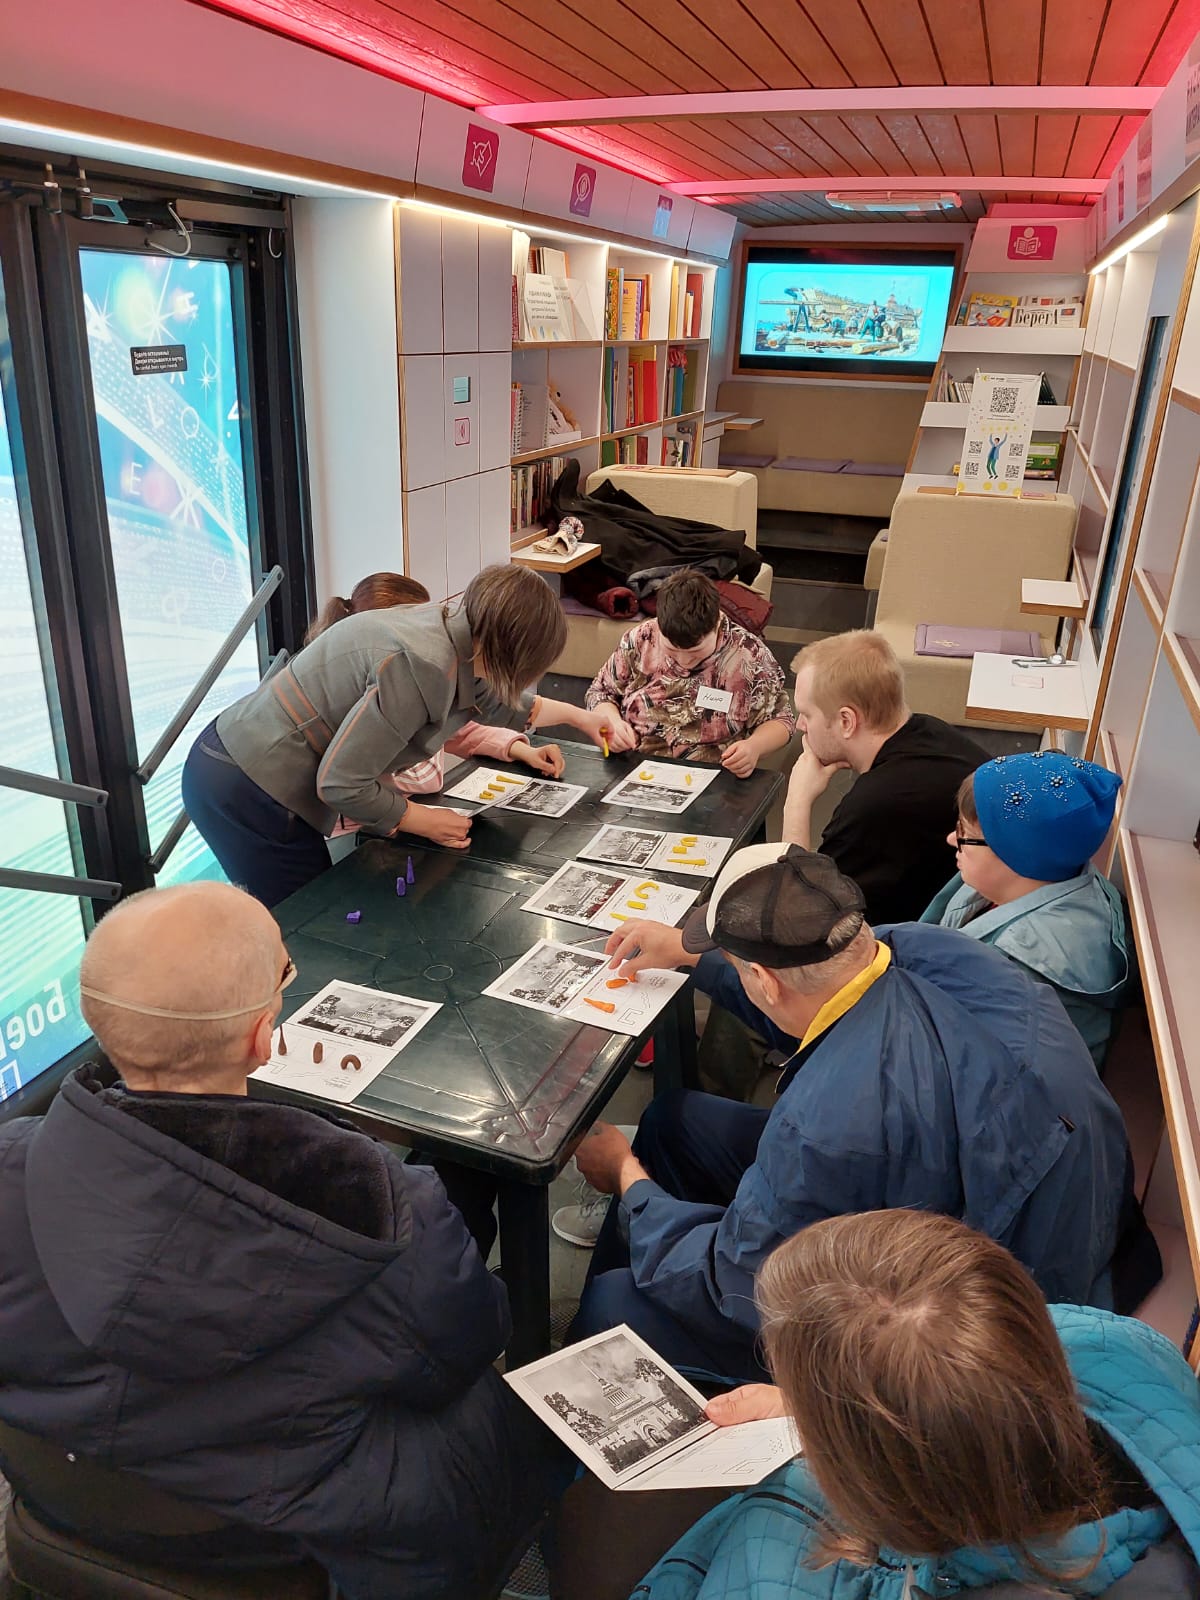 На вертикальной фотографии запечатлён момент проведения мастер-класса. Участники работают с пластилином на мнемокарточках. Им помогает ведущая мероприятия.